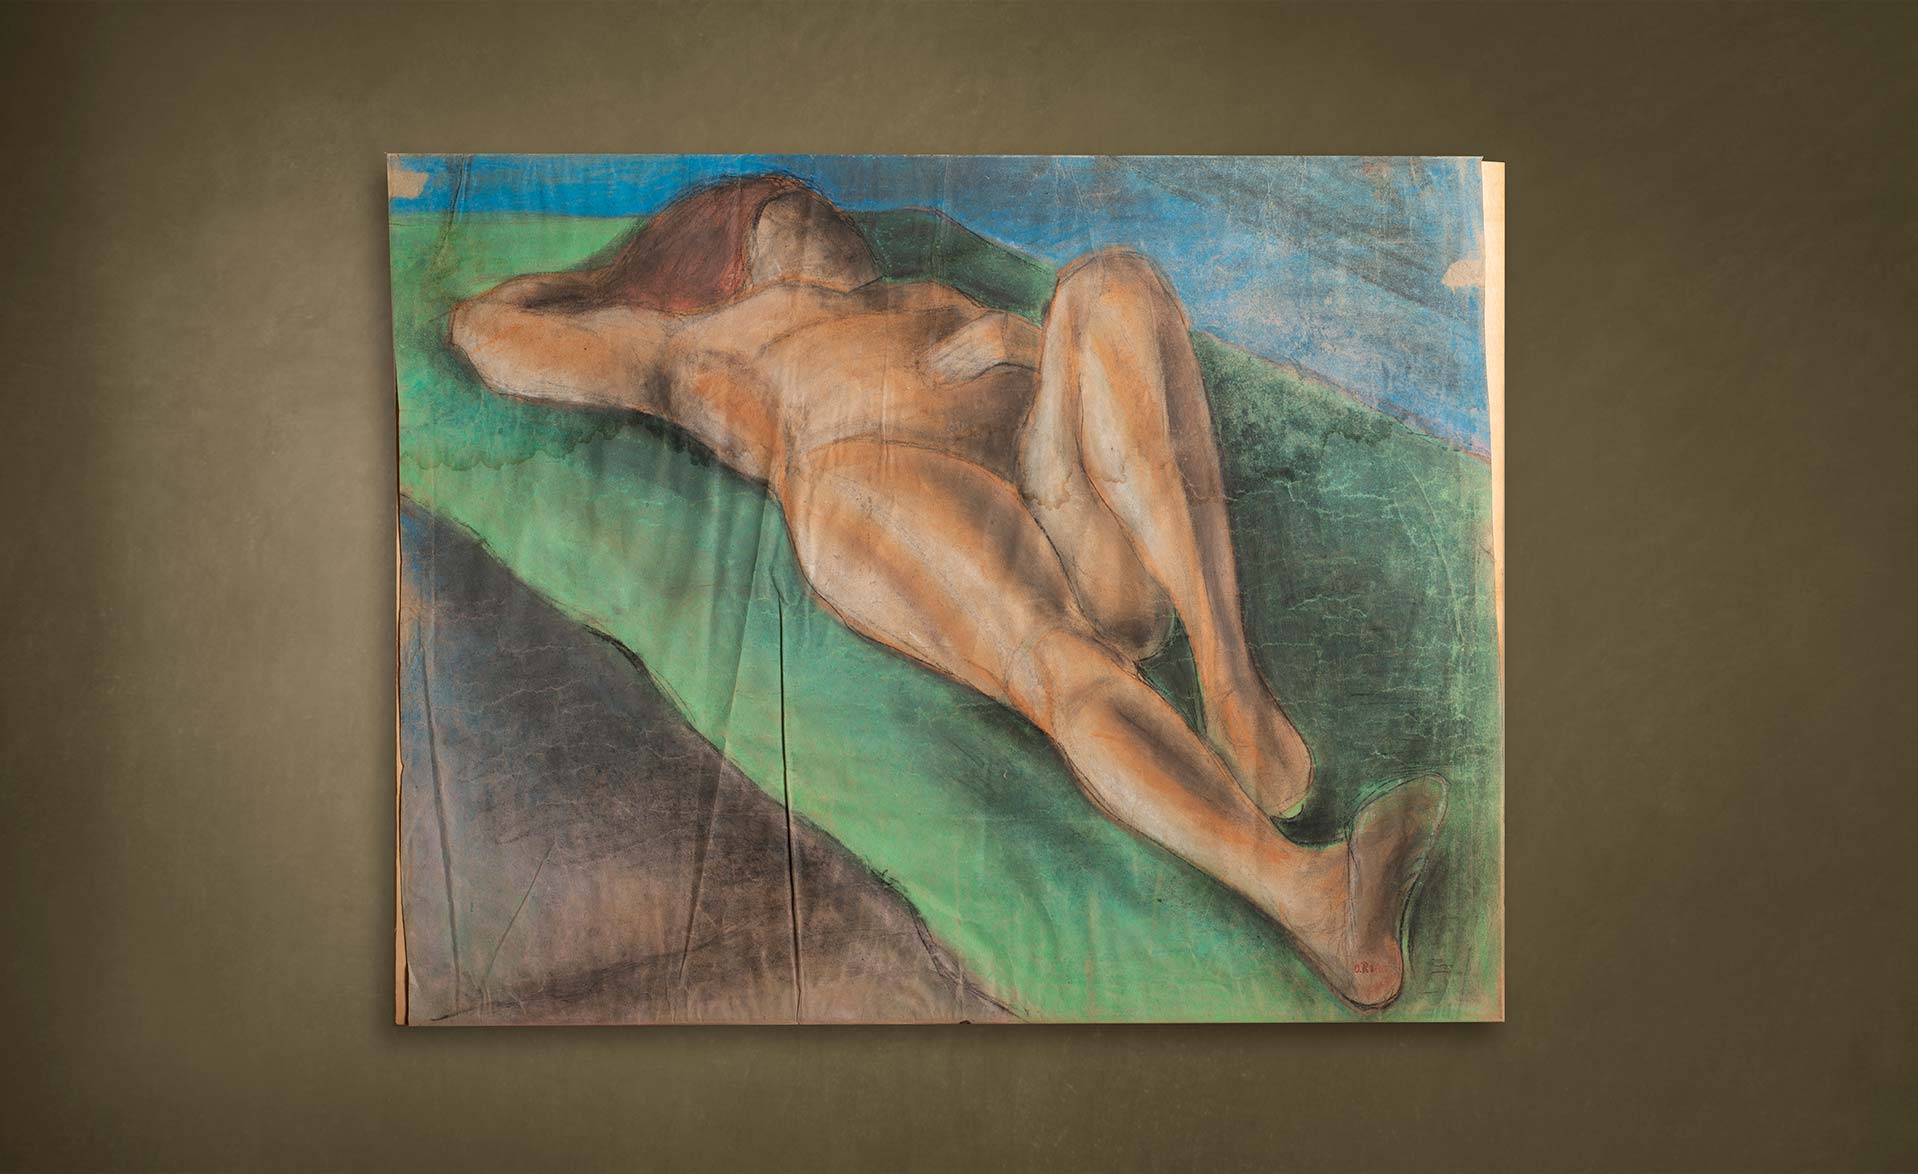 quadro-nudo-femminile-disteso-eseguito-con-tecnica-mista-autore-Rosai-vendita-quadri-di-pregio-800-900-asolo-treviso-vicenza-italia-a